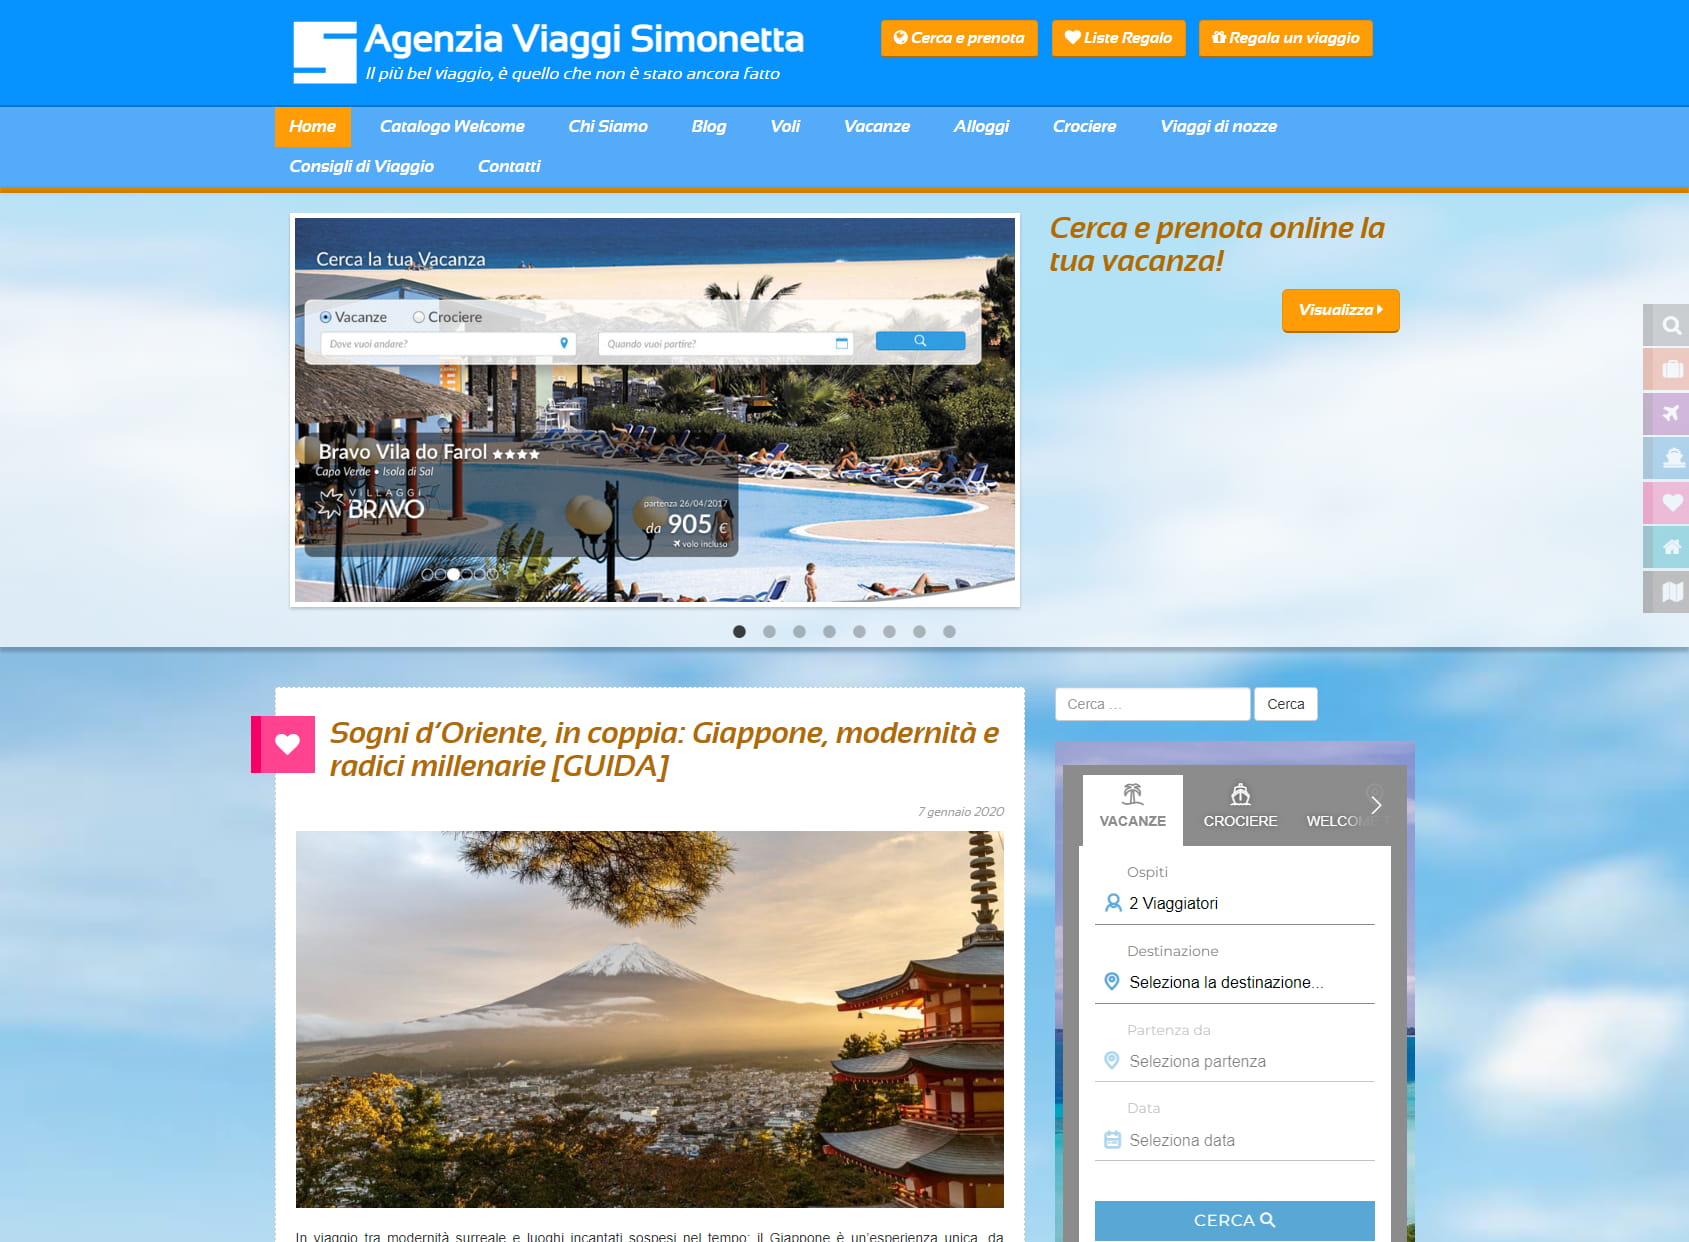 Simonetta Travel Agency